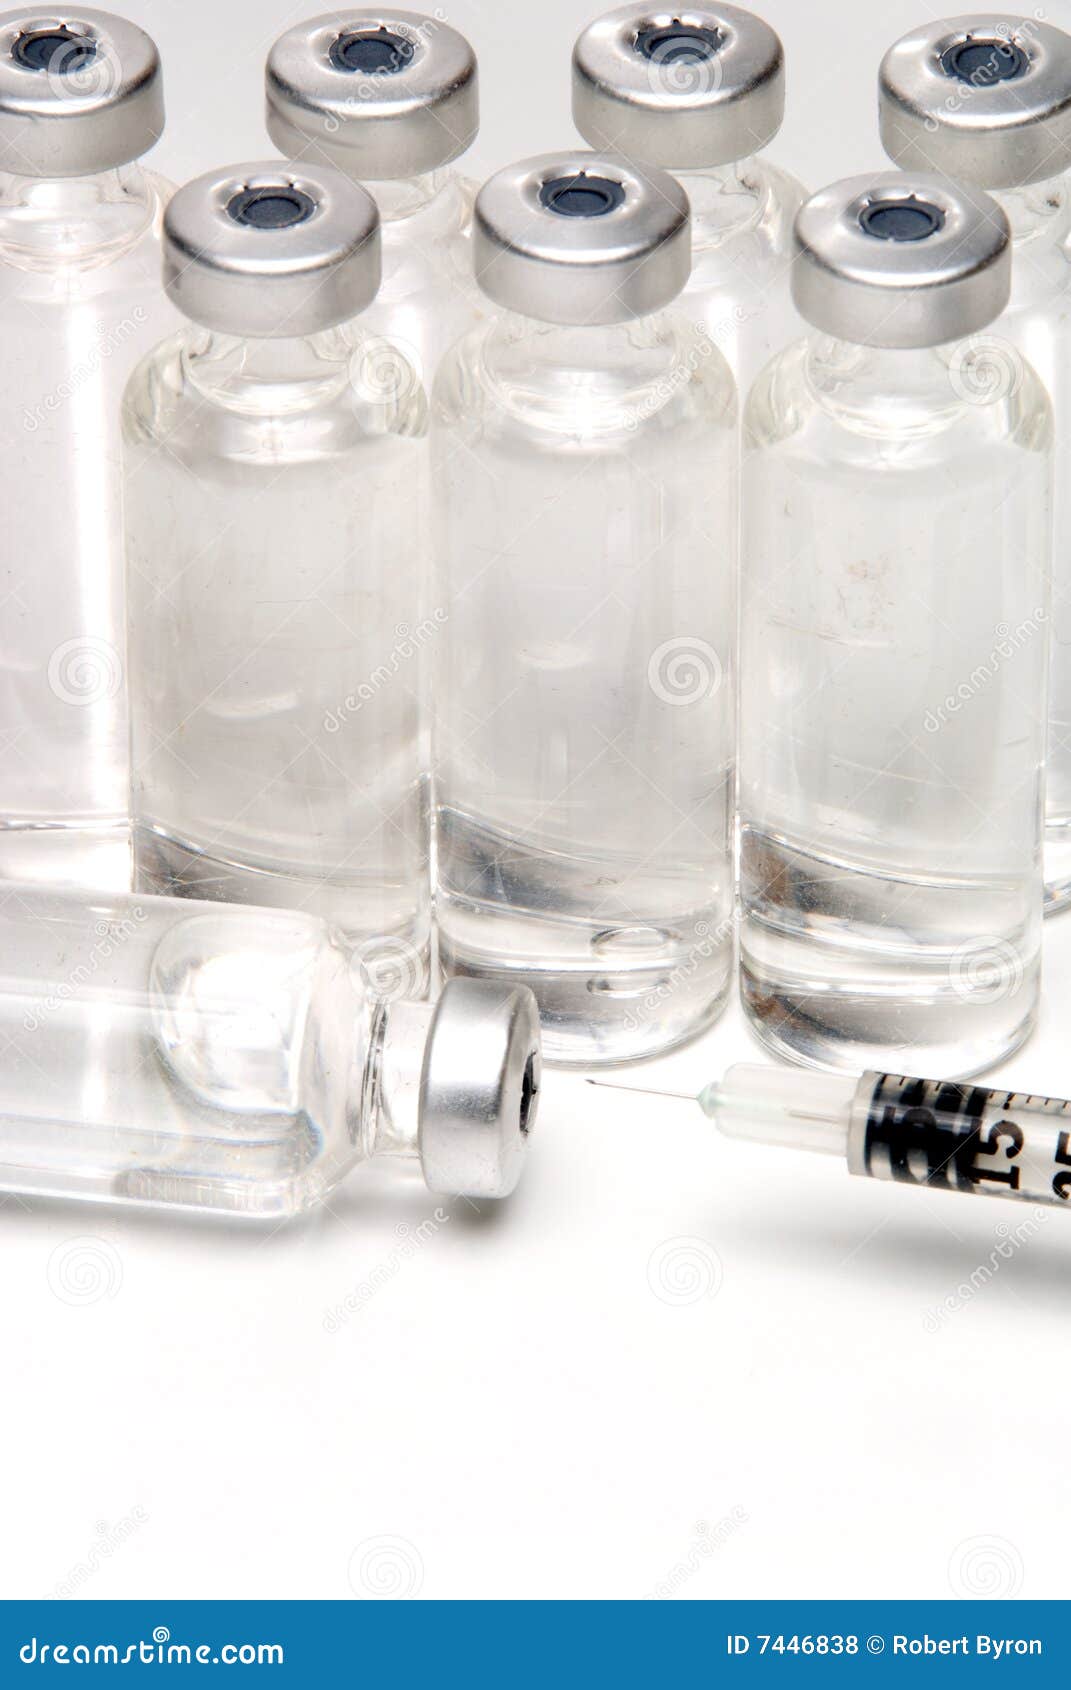 medicine vial and syringe